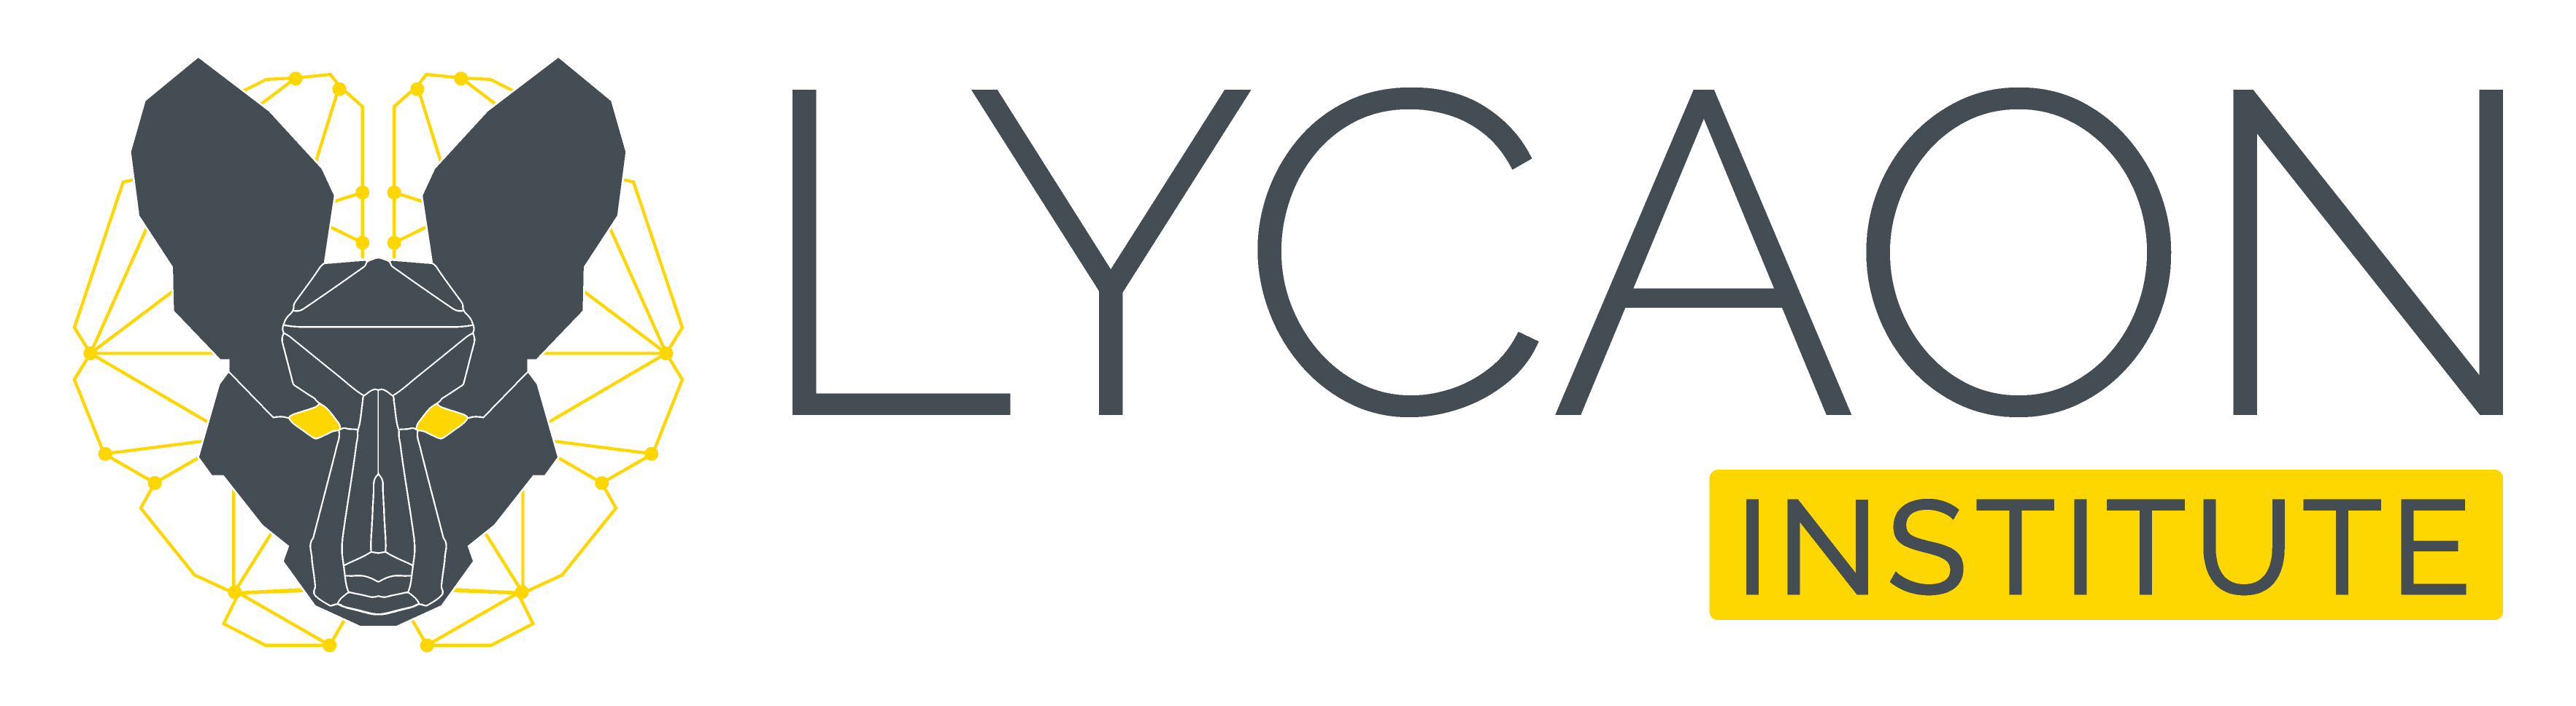 Lycaon Institute